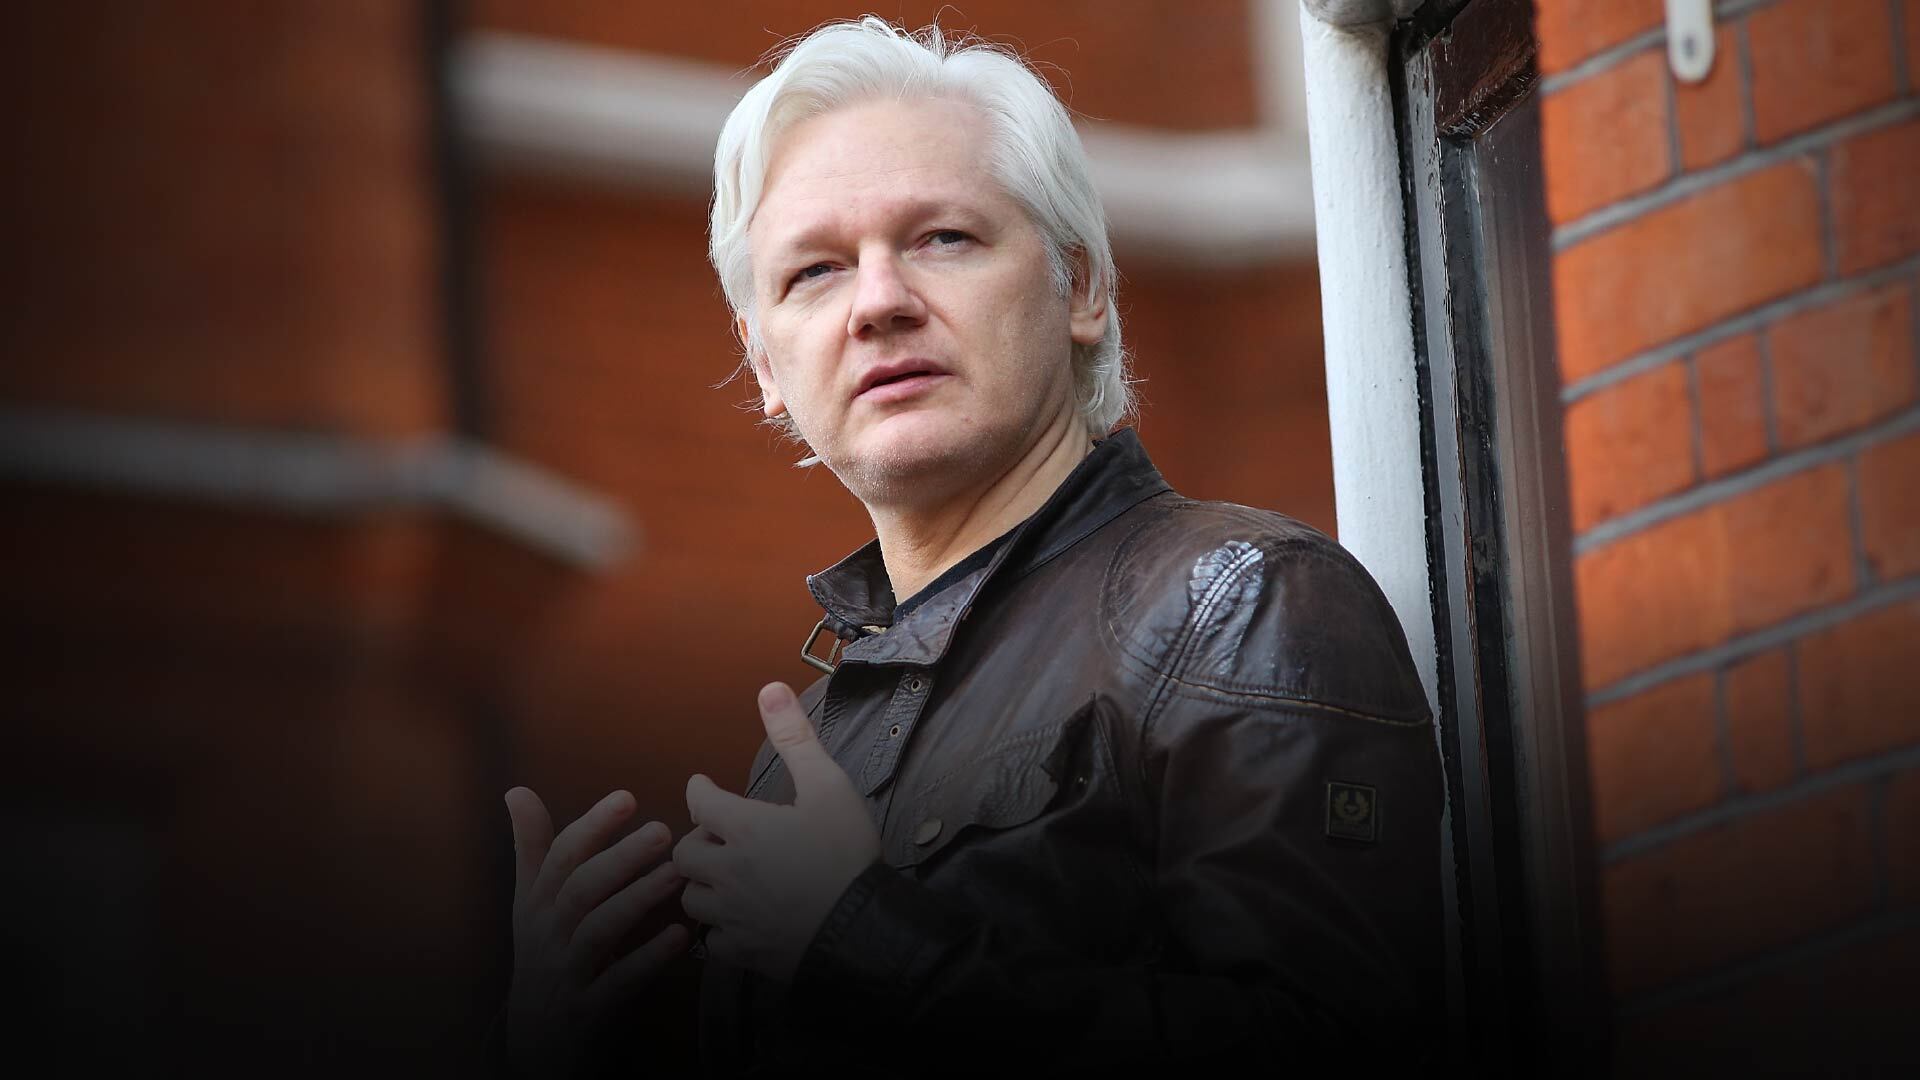 Would Julian Assange’s extradition threaten press freedoms worldwide? | Julian Assange